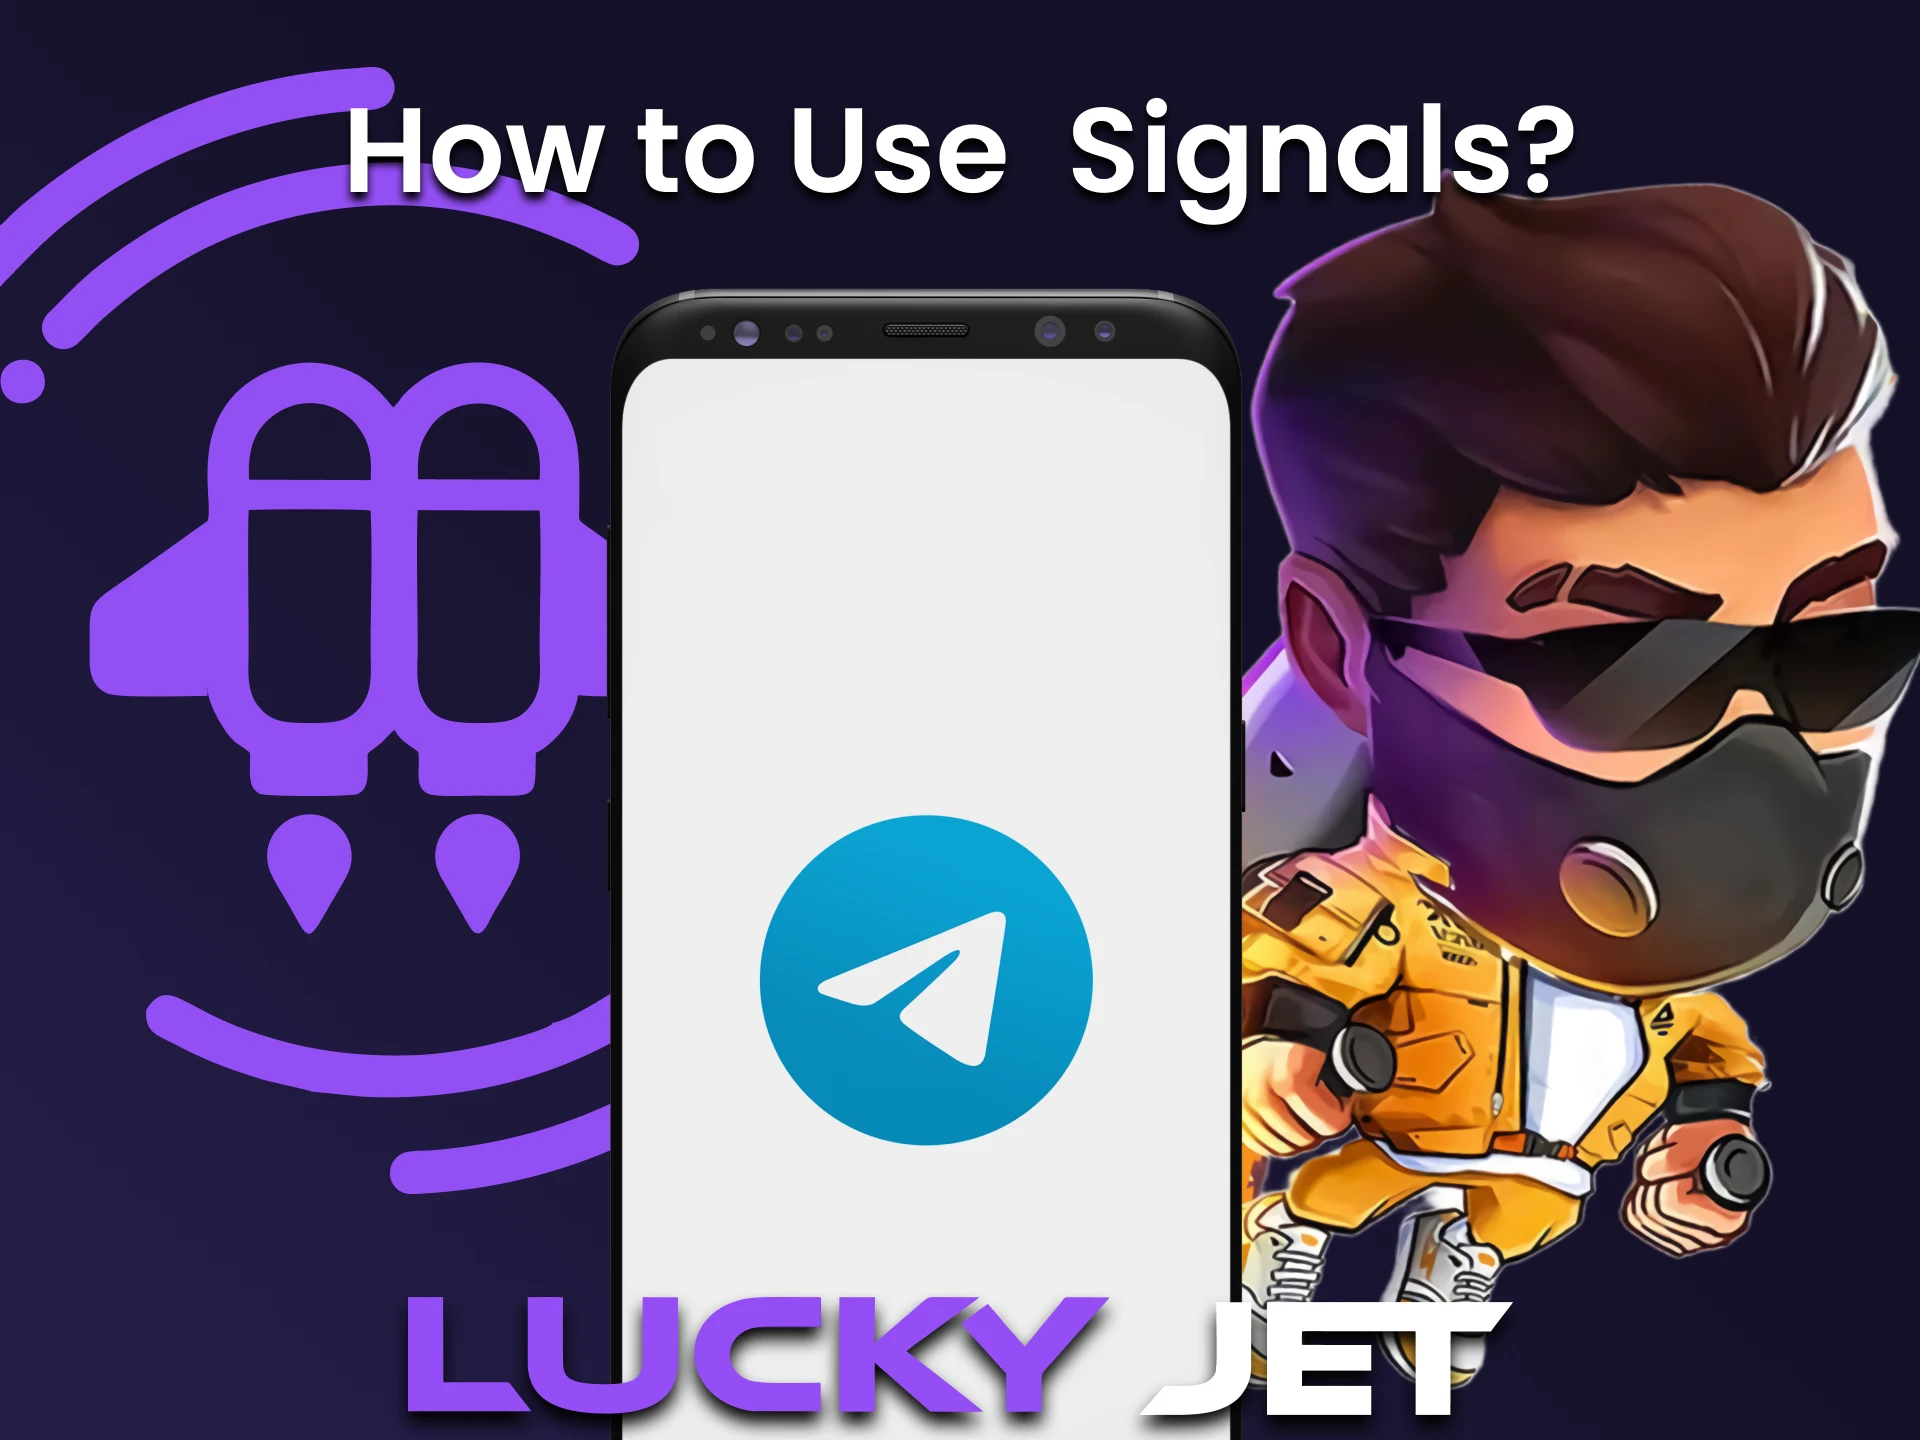 signals-how-use.webp